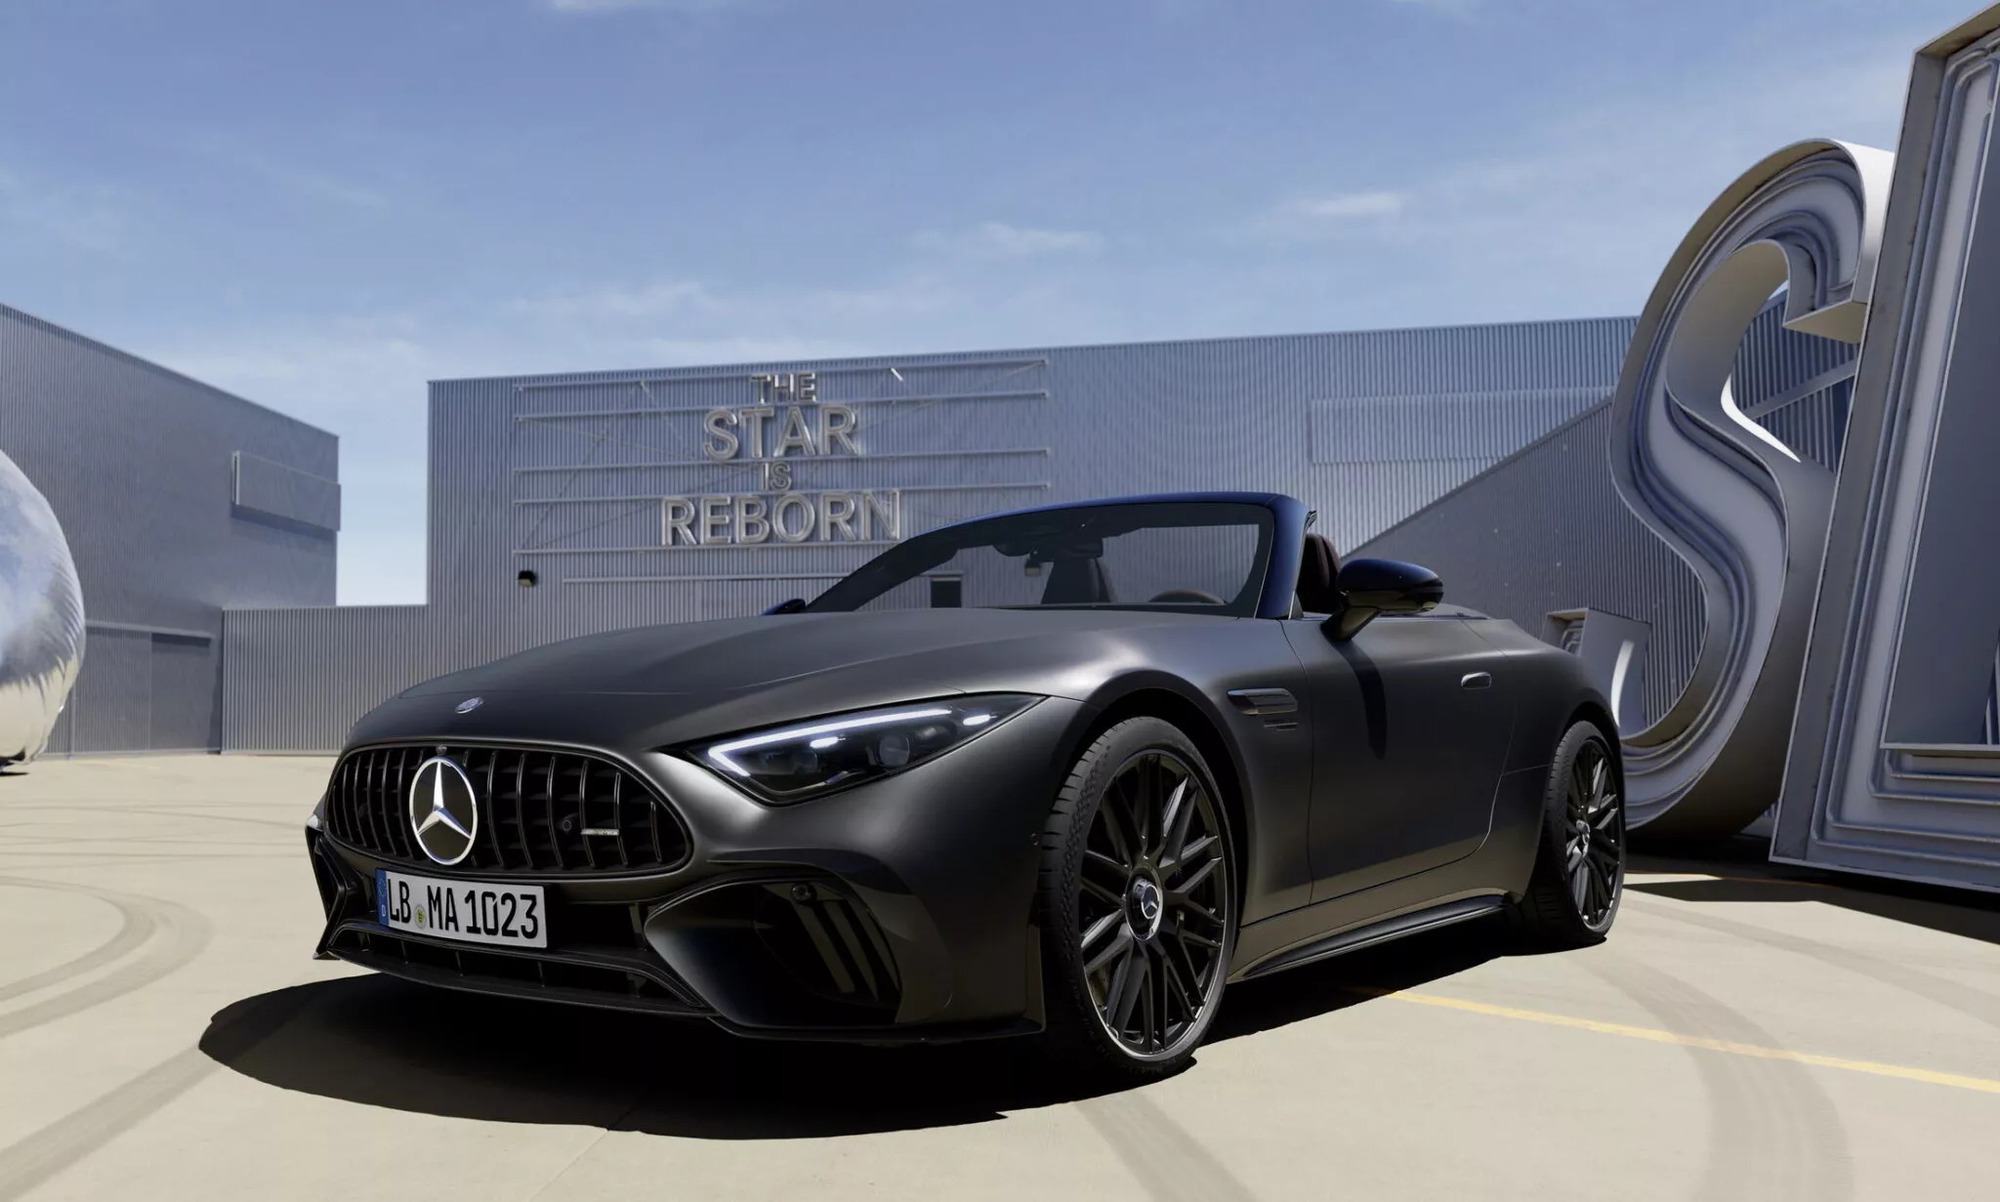 Mercedes-Maybach sắp có loạt xe siêu sang mới cho giới siêu giàu, cạnh tranh Rolls-Royce, Bentley